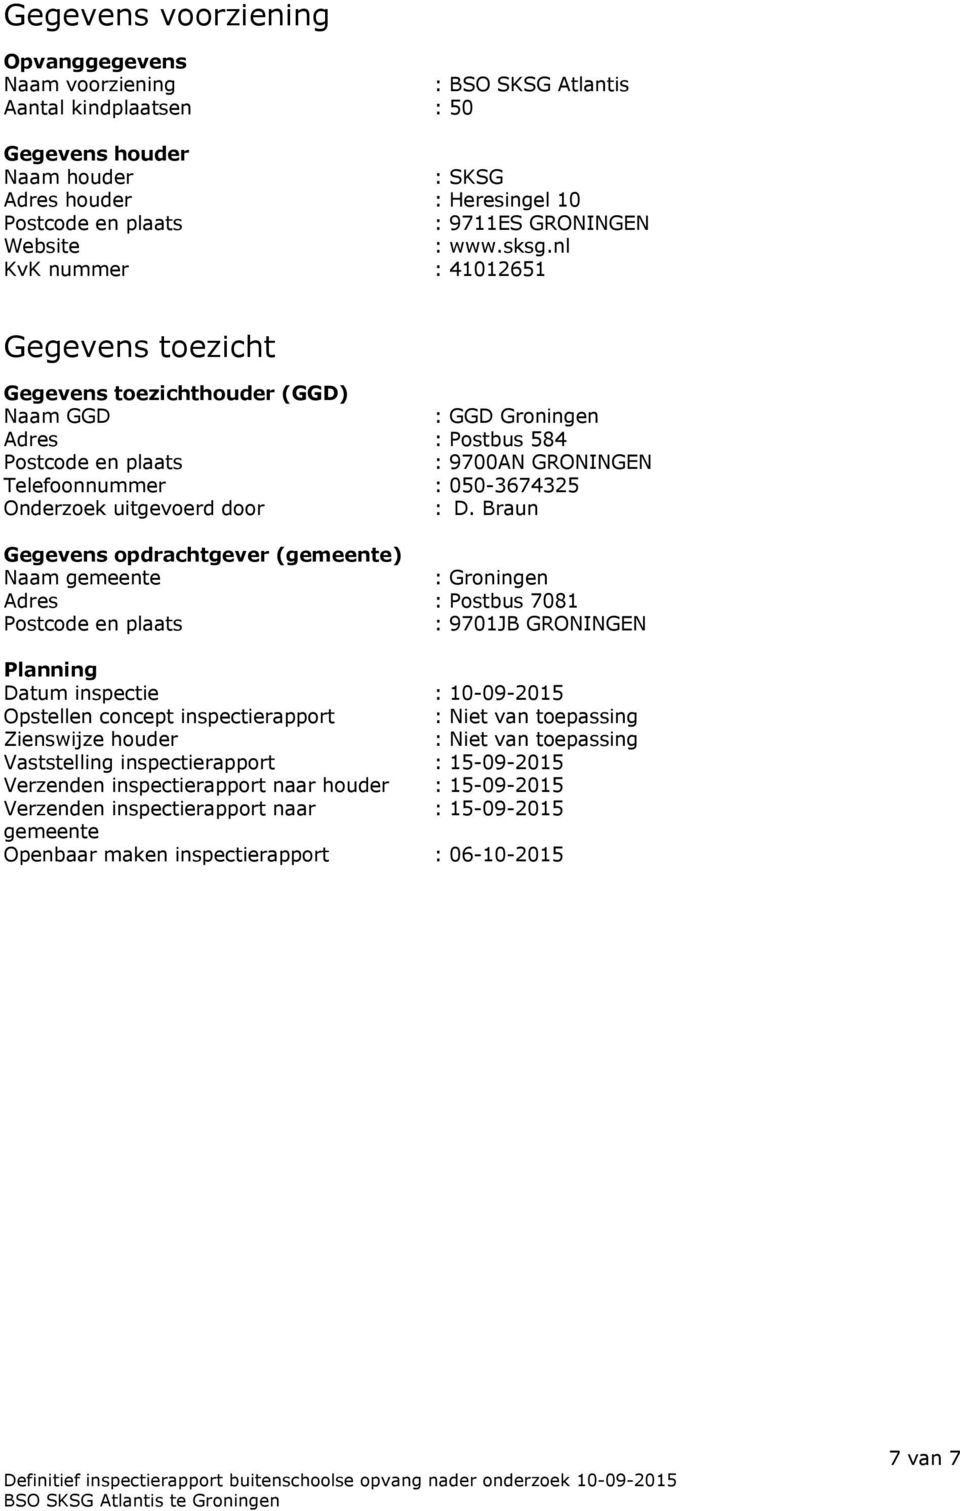 nl KvK nummer : 41012651 Gegevens toezicht Gegevens toezichthouder (GGD) Naam GGD : GGD Groningen Adres : Postbus 584 Postcode en plaats : 9700AN GRONINGEN Telefoonnummer : 050-3674325 Onderzoek